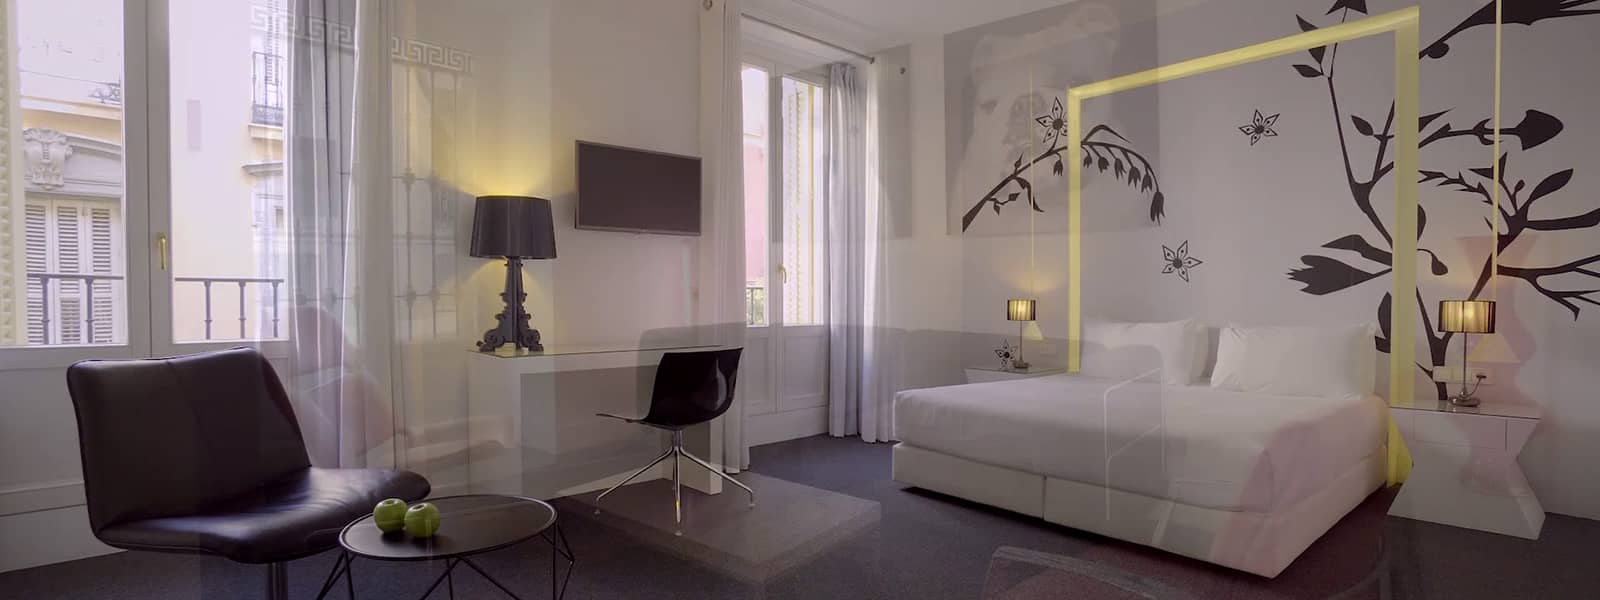 Beïnvloeden Wonderbaarlijk Slager Cool Hotel in Madrid | Room Mate Mario